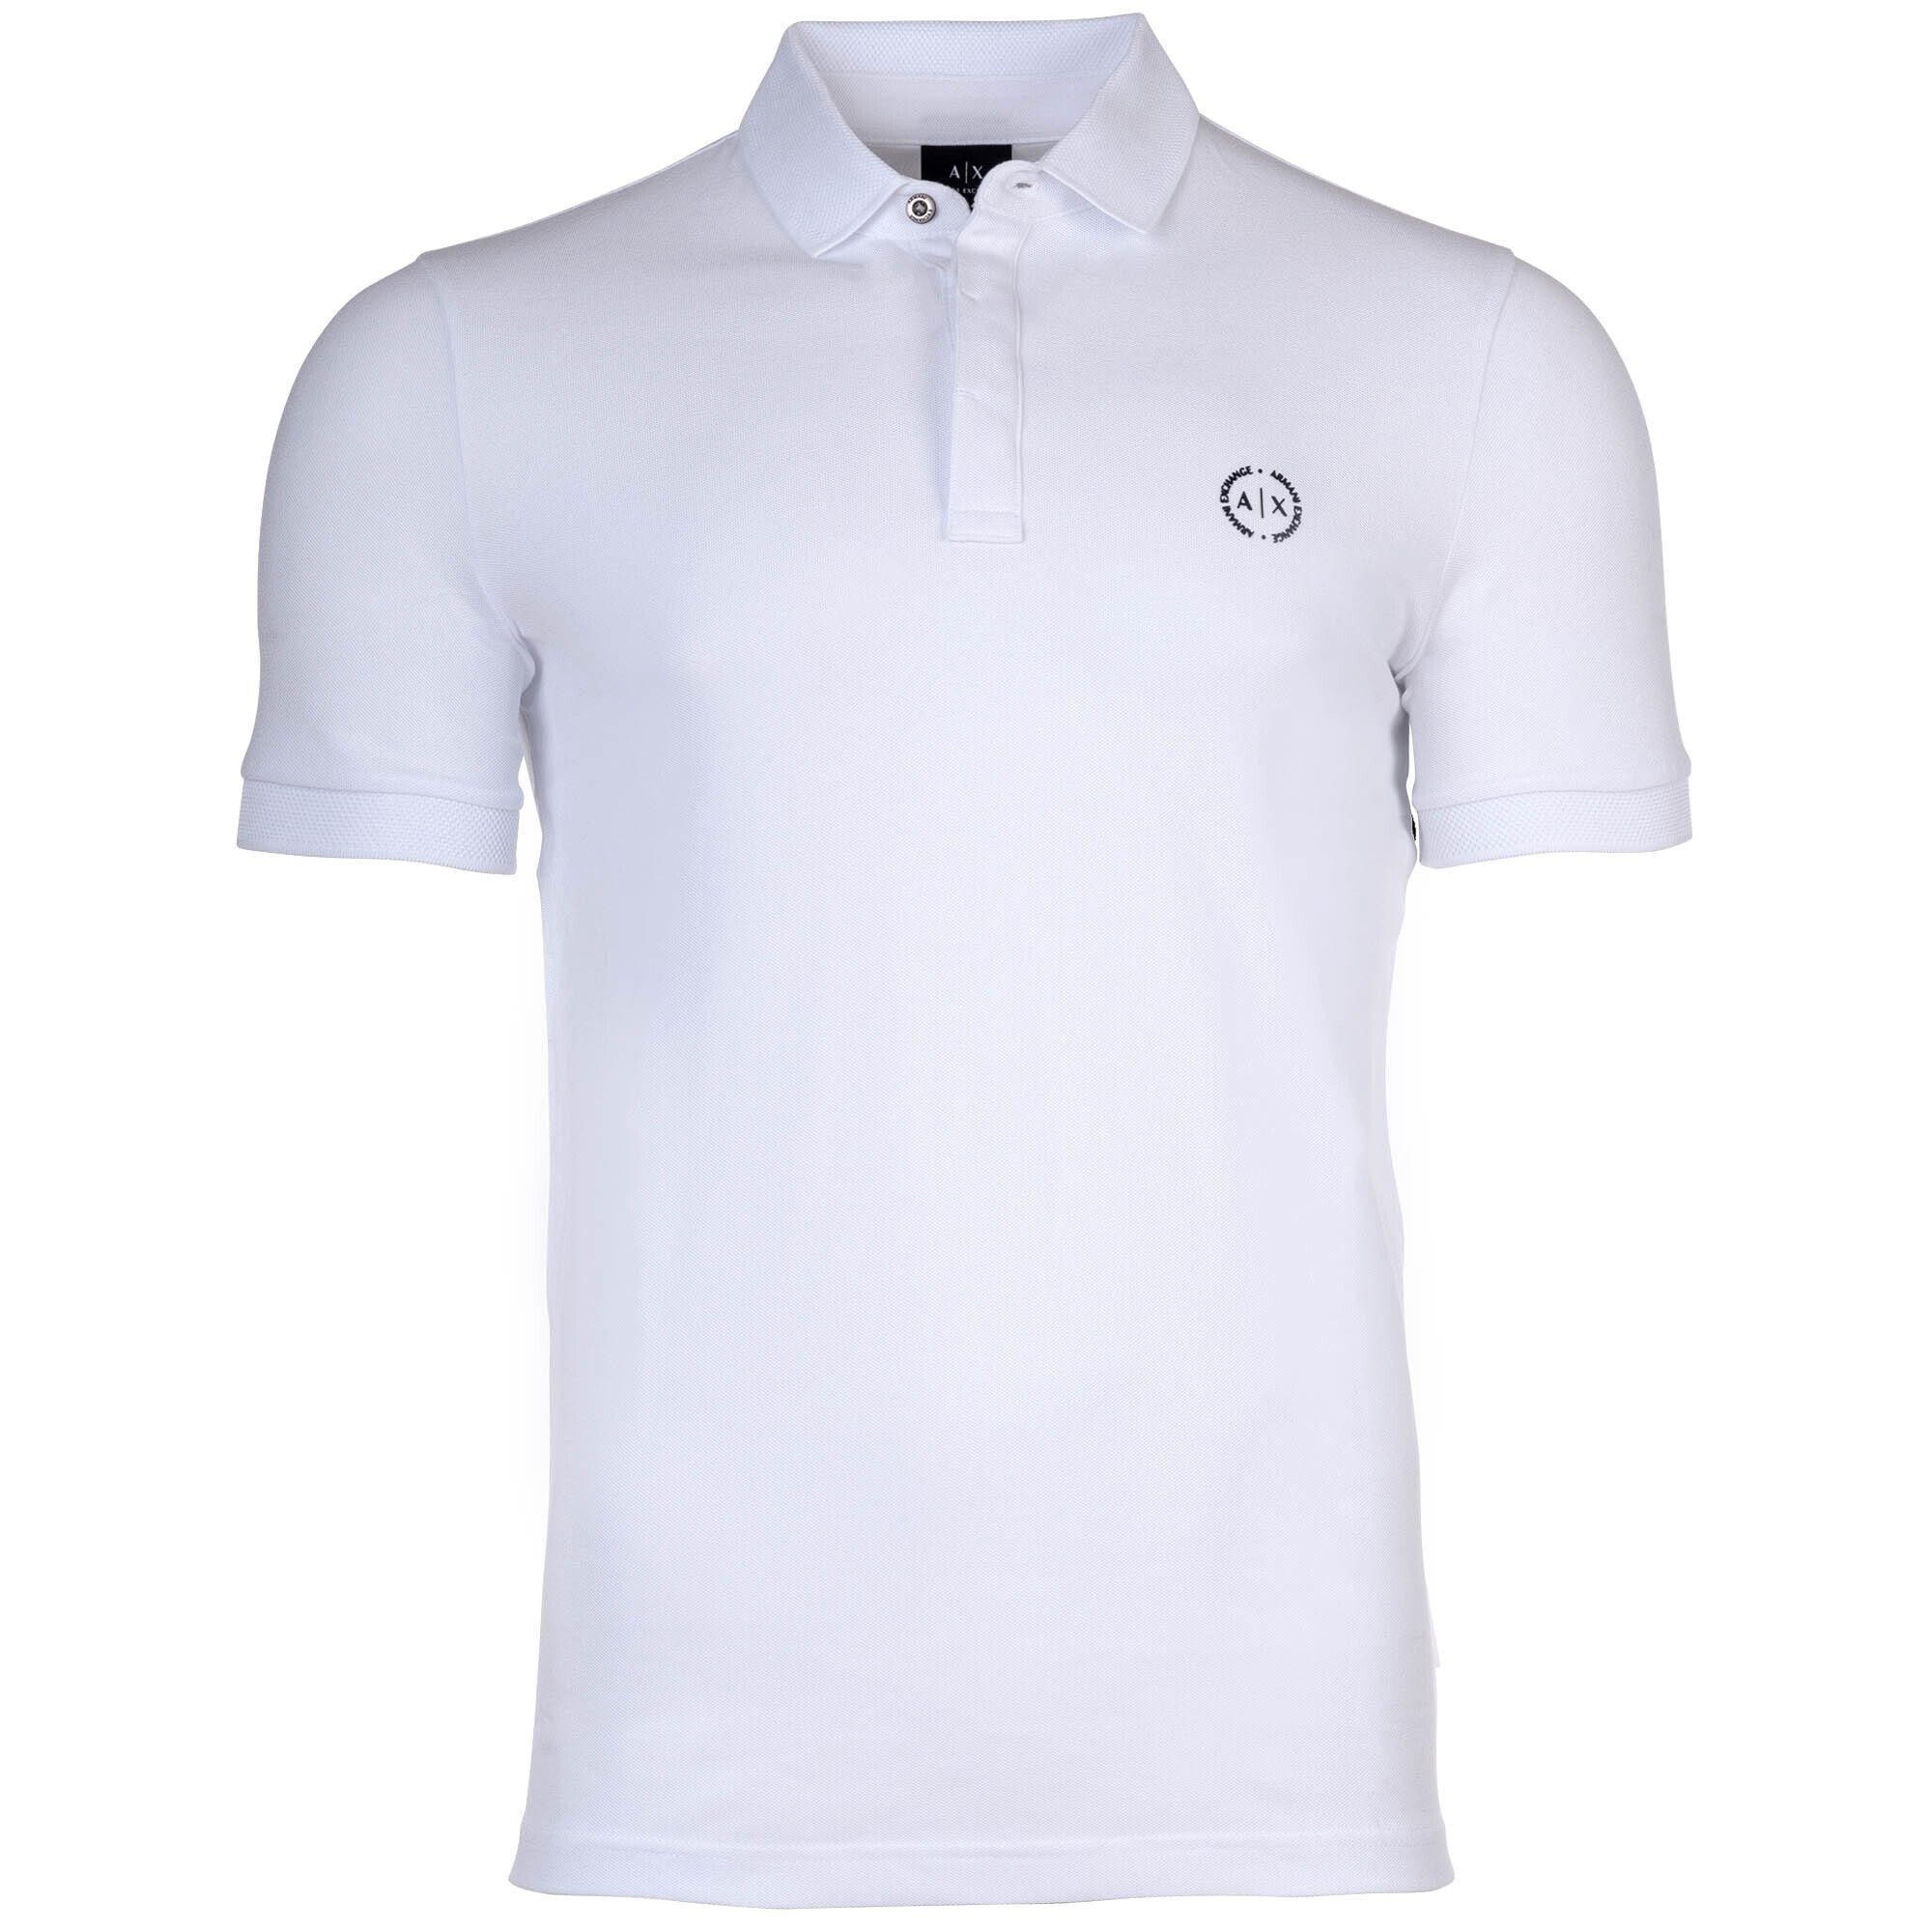 ARMANI EXCHANGE Poloshirt Herren Poloshirt - Slim fit, einfarbig, Cotton Weiß